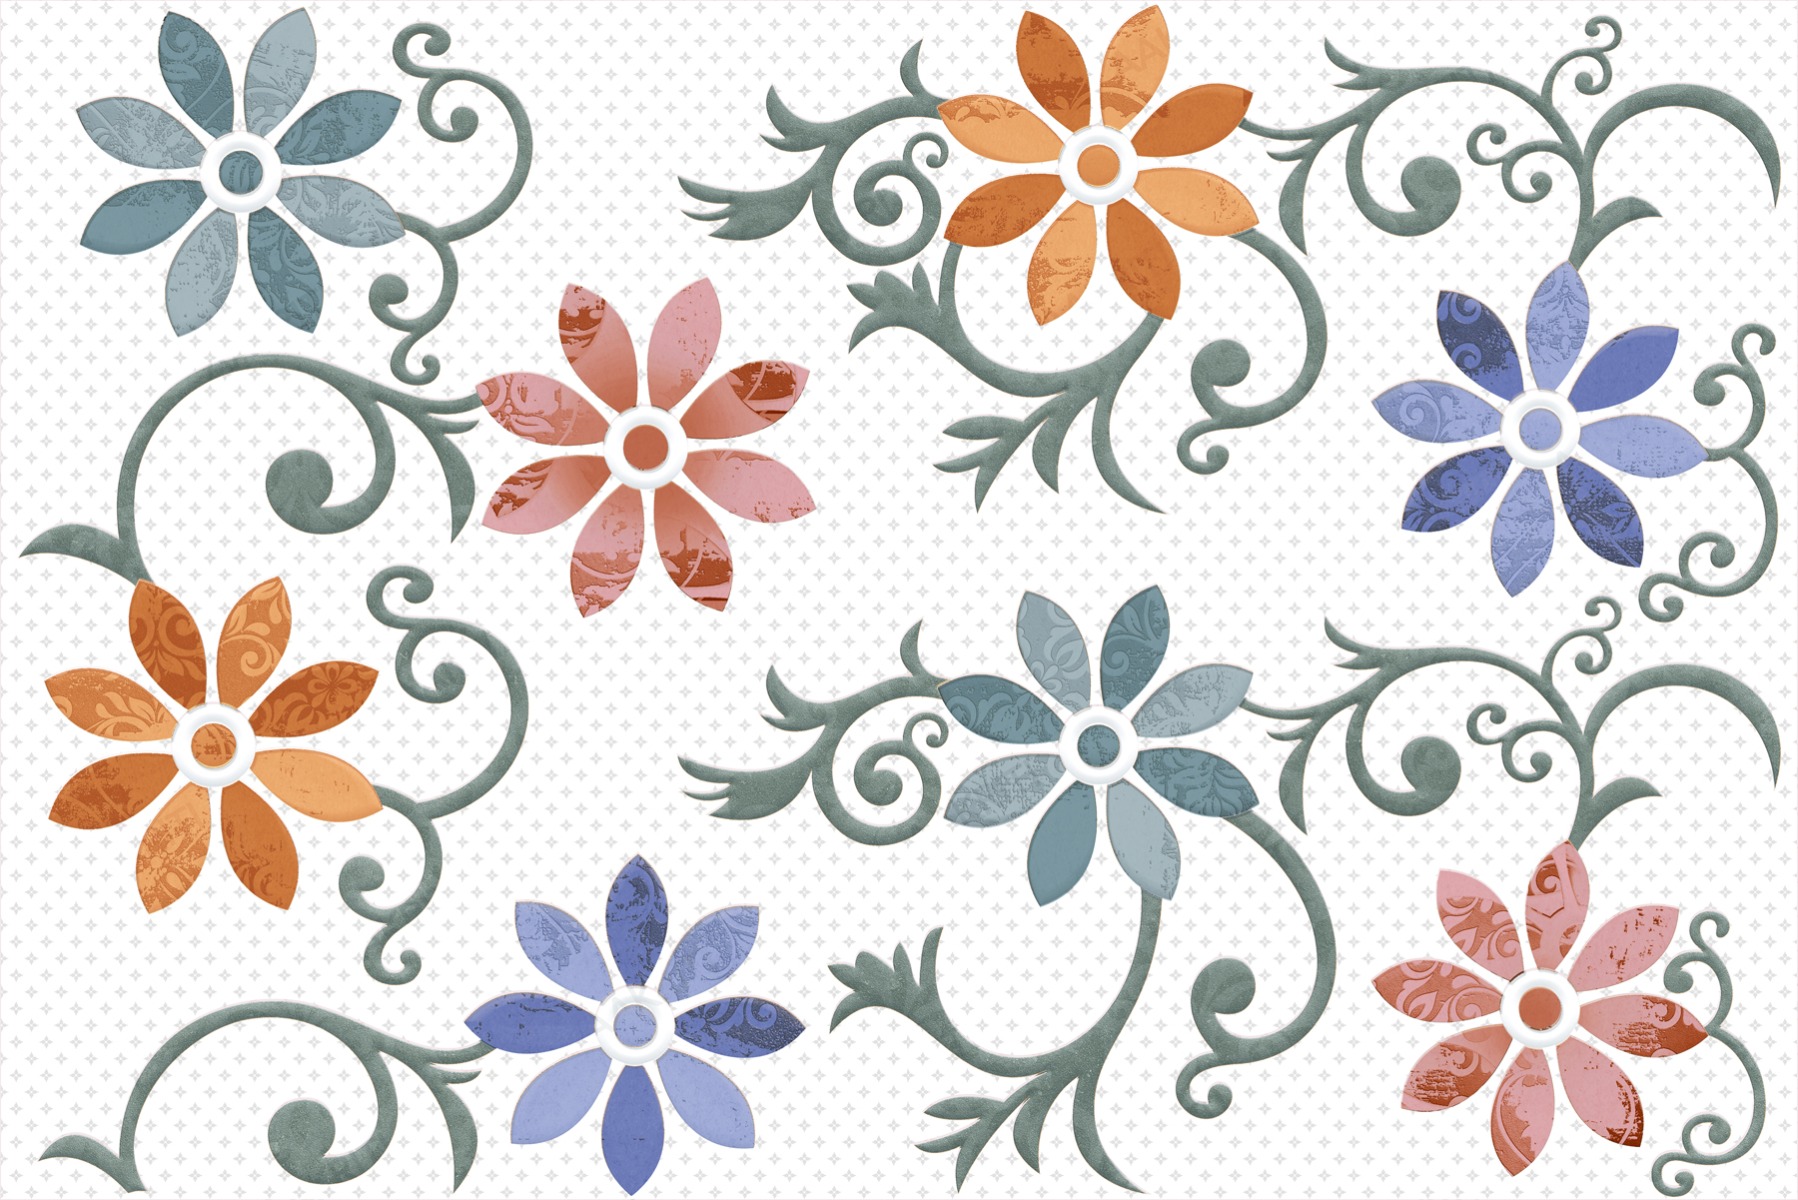 Flower Tiles for Bathroom Tiles, Kitchen Tiles, Accent Tiles